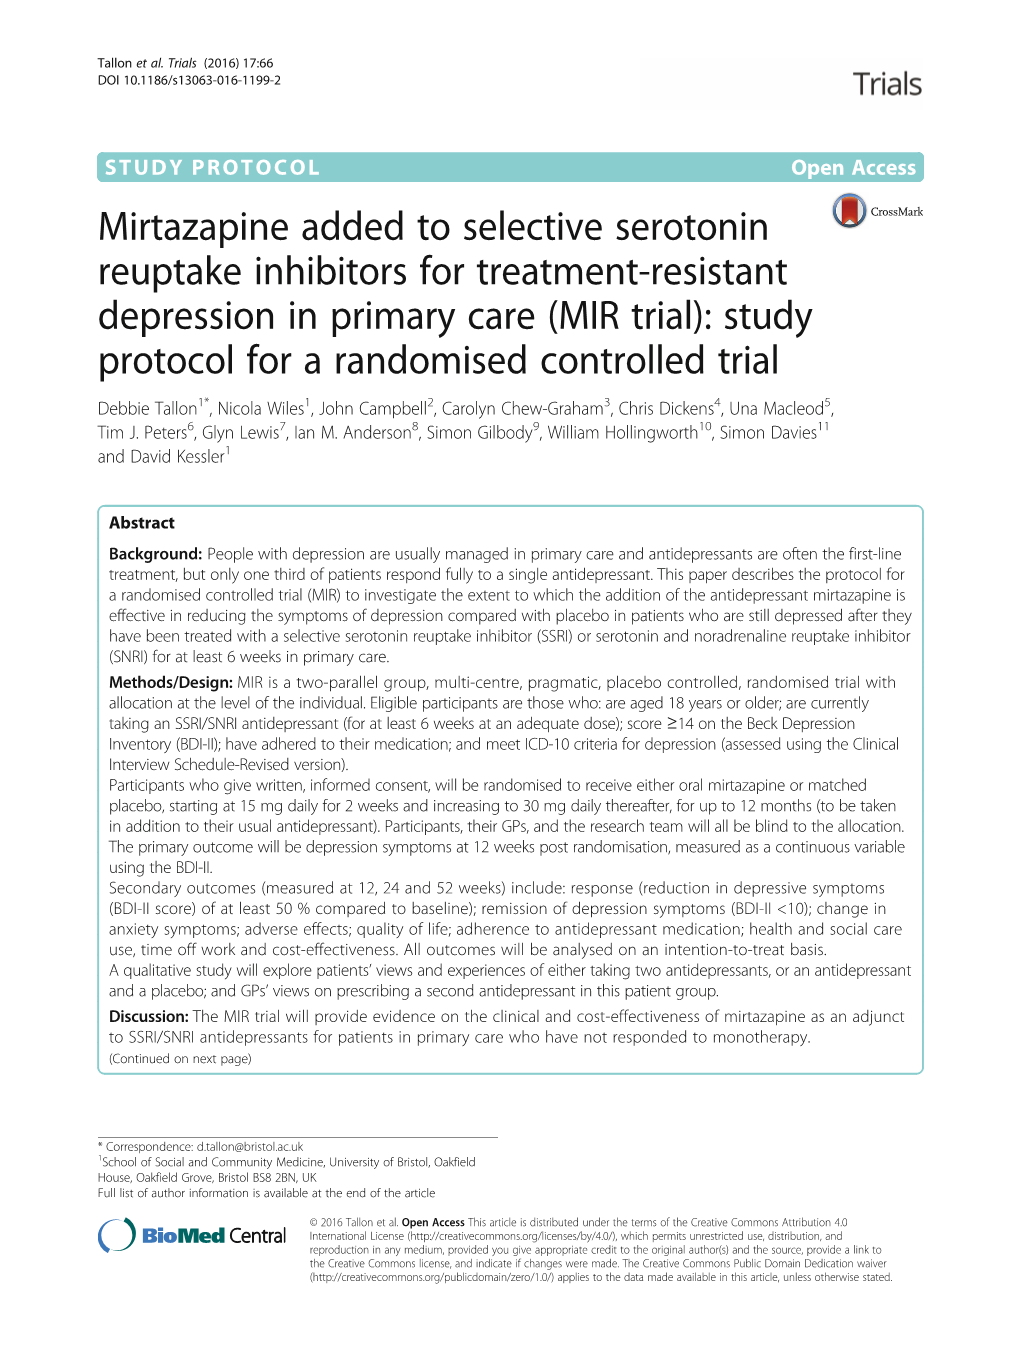 Mirtazapine Added to Selective Serotonin Reuptake Inhibitors For